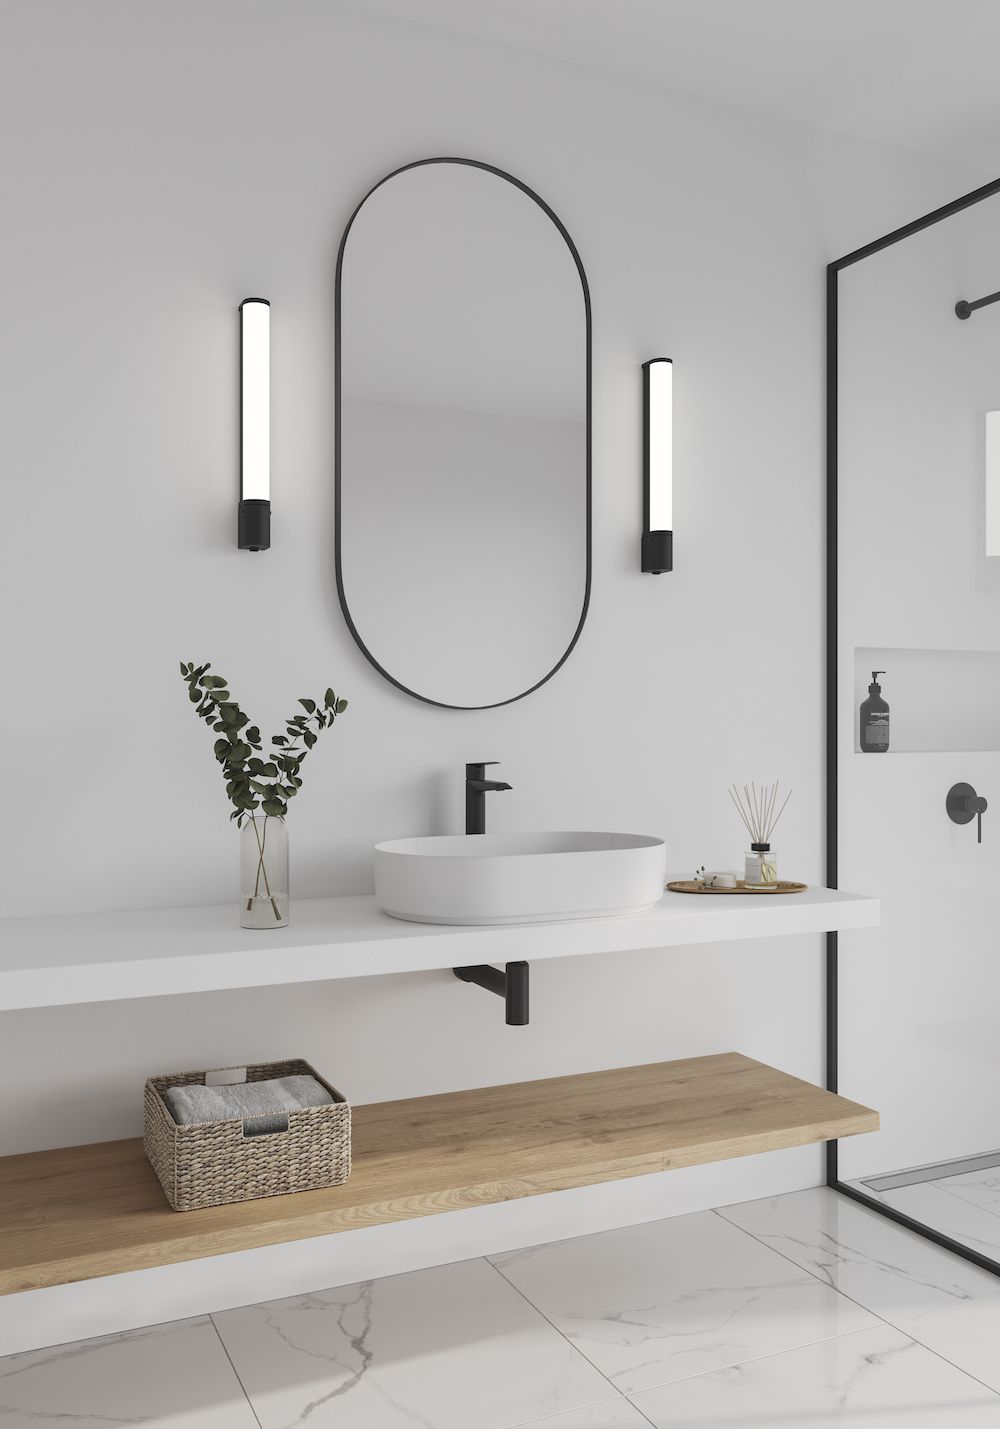 Kinkiety nowoczesne minimalistyczne w łazience obok lustra